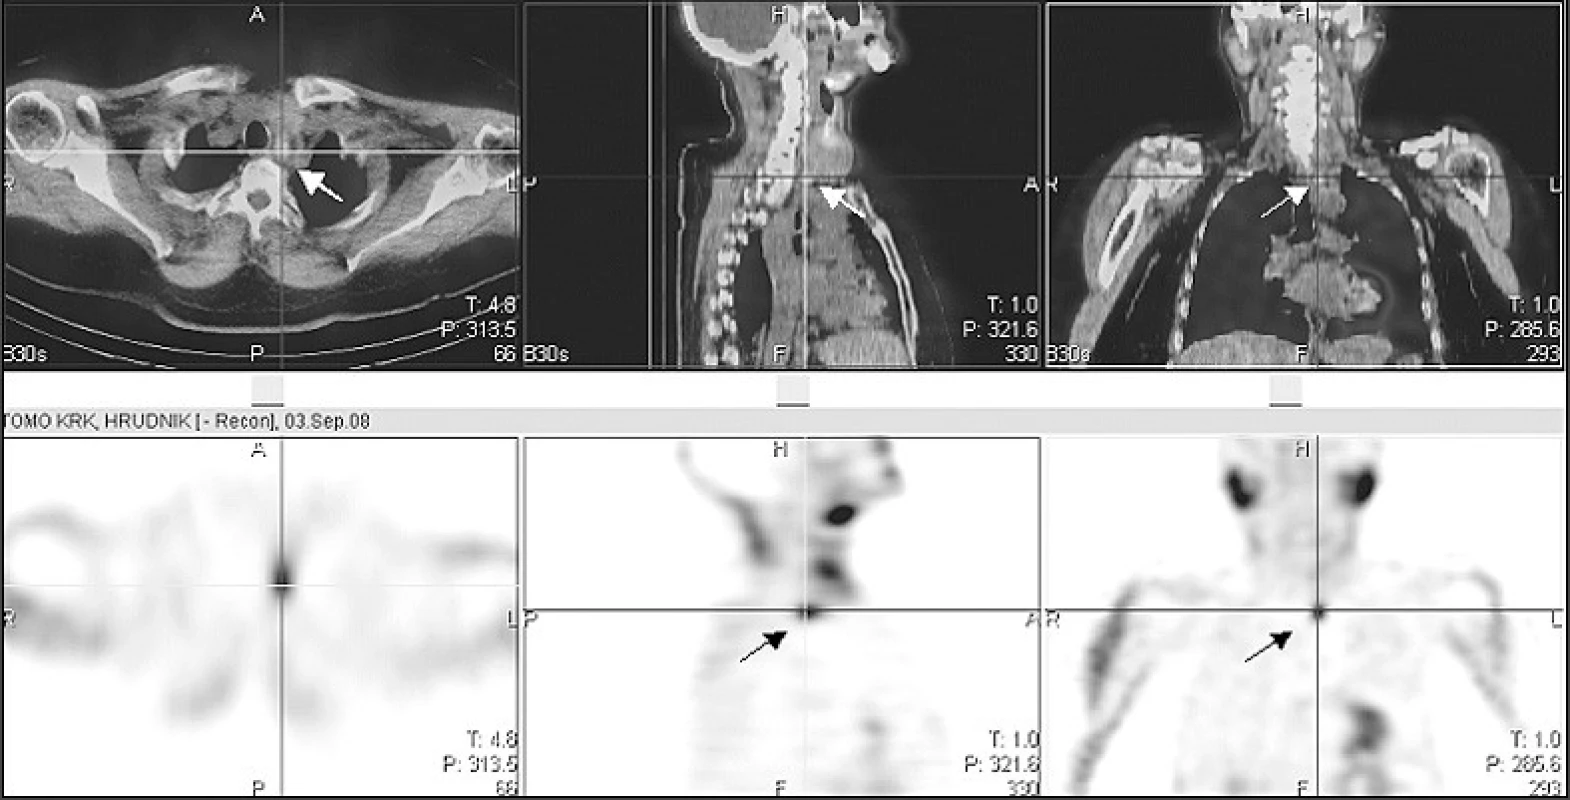 Scintigrafie příštítných tělísek doplněná tomografií krku a hrudníku (SPECT/low dose CT)
Drobné oválné ložisko zvýšené akumulace radiofarmaka (&lt;sup&gt;99m&lt;/sup&gt;Tc-MIBI) za dolním polem zvětšeného levého laloku štítnice hluboko prevertebrálně (šipka)